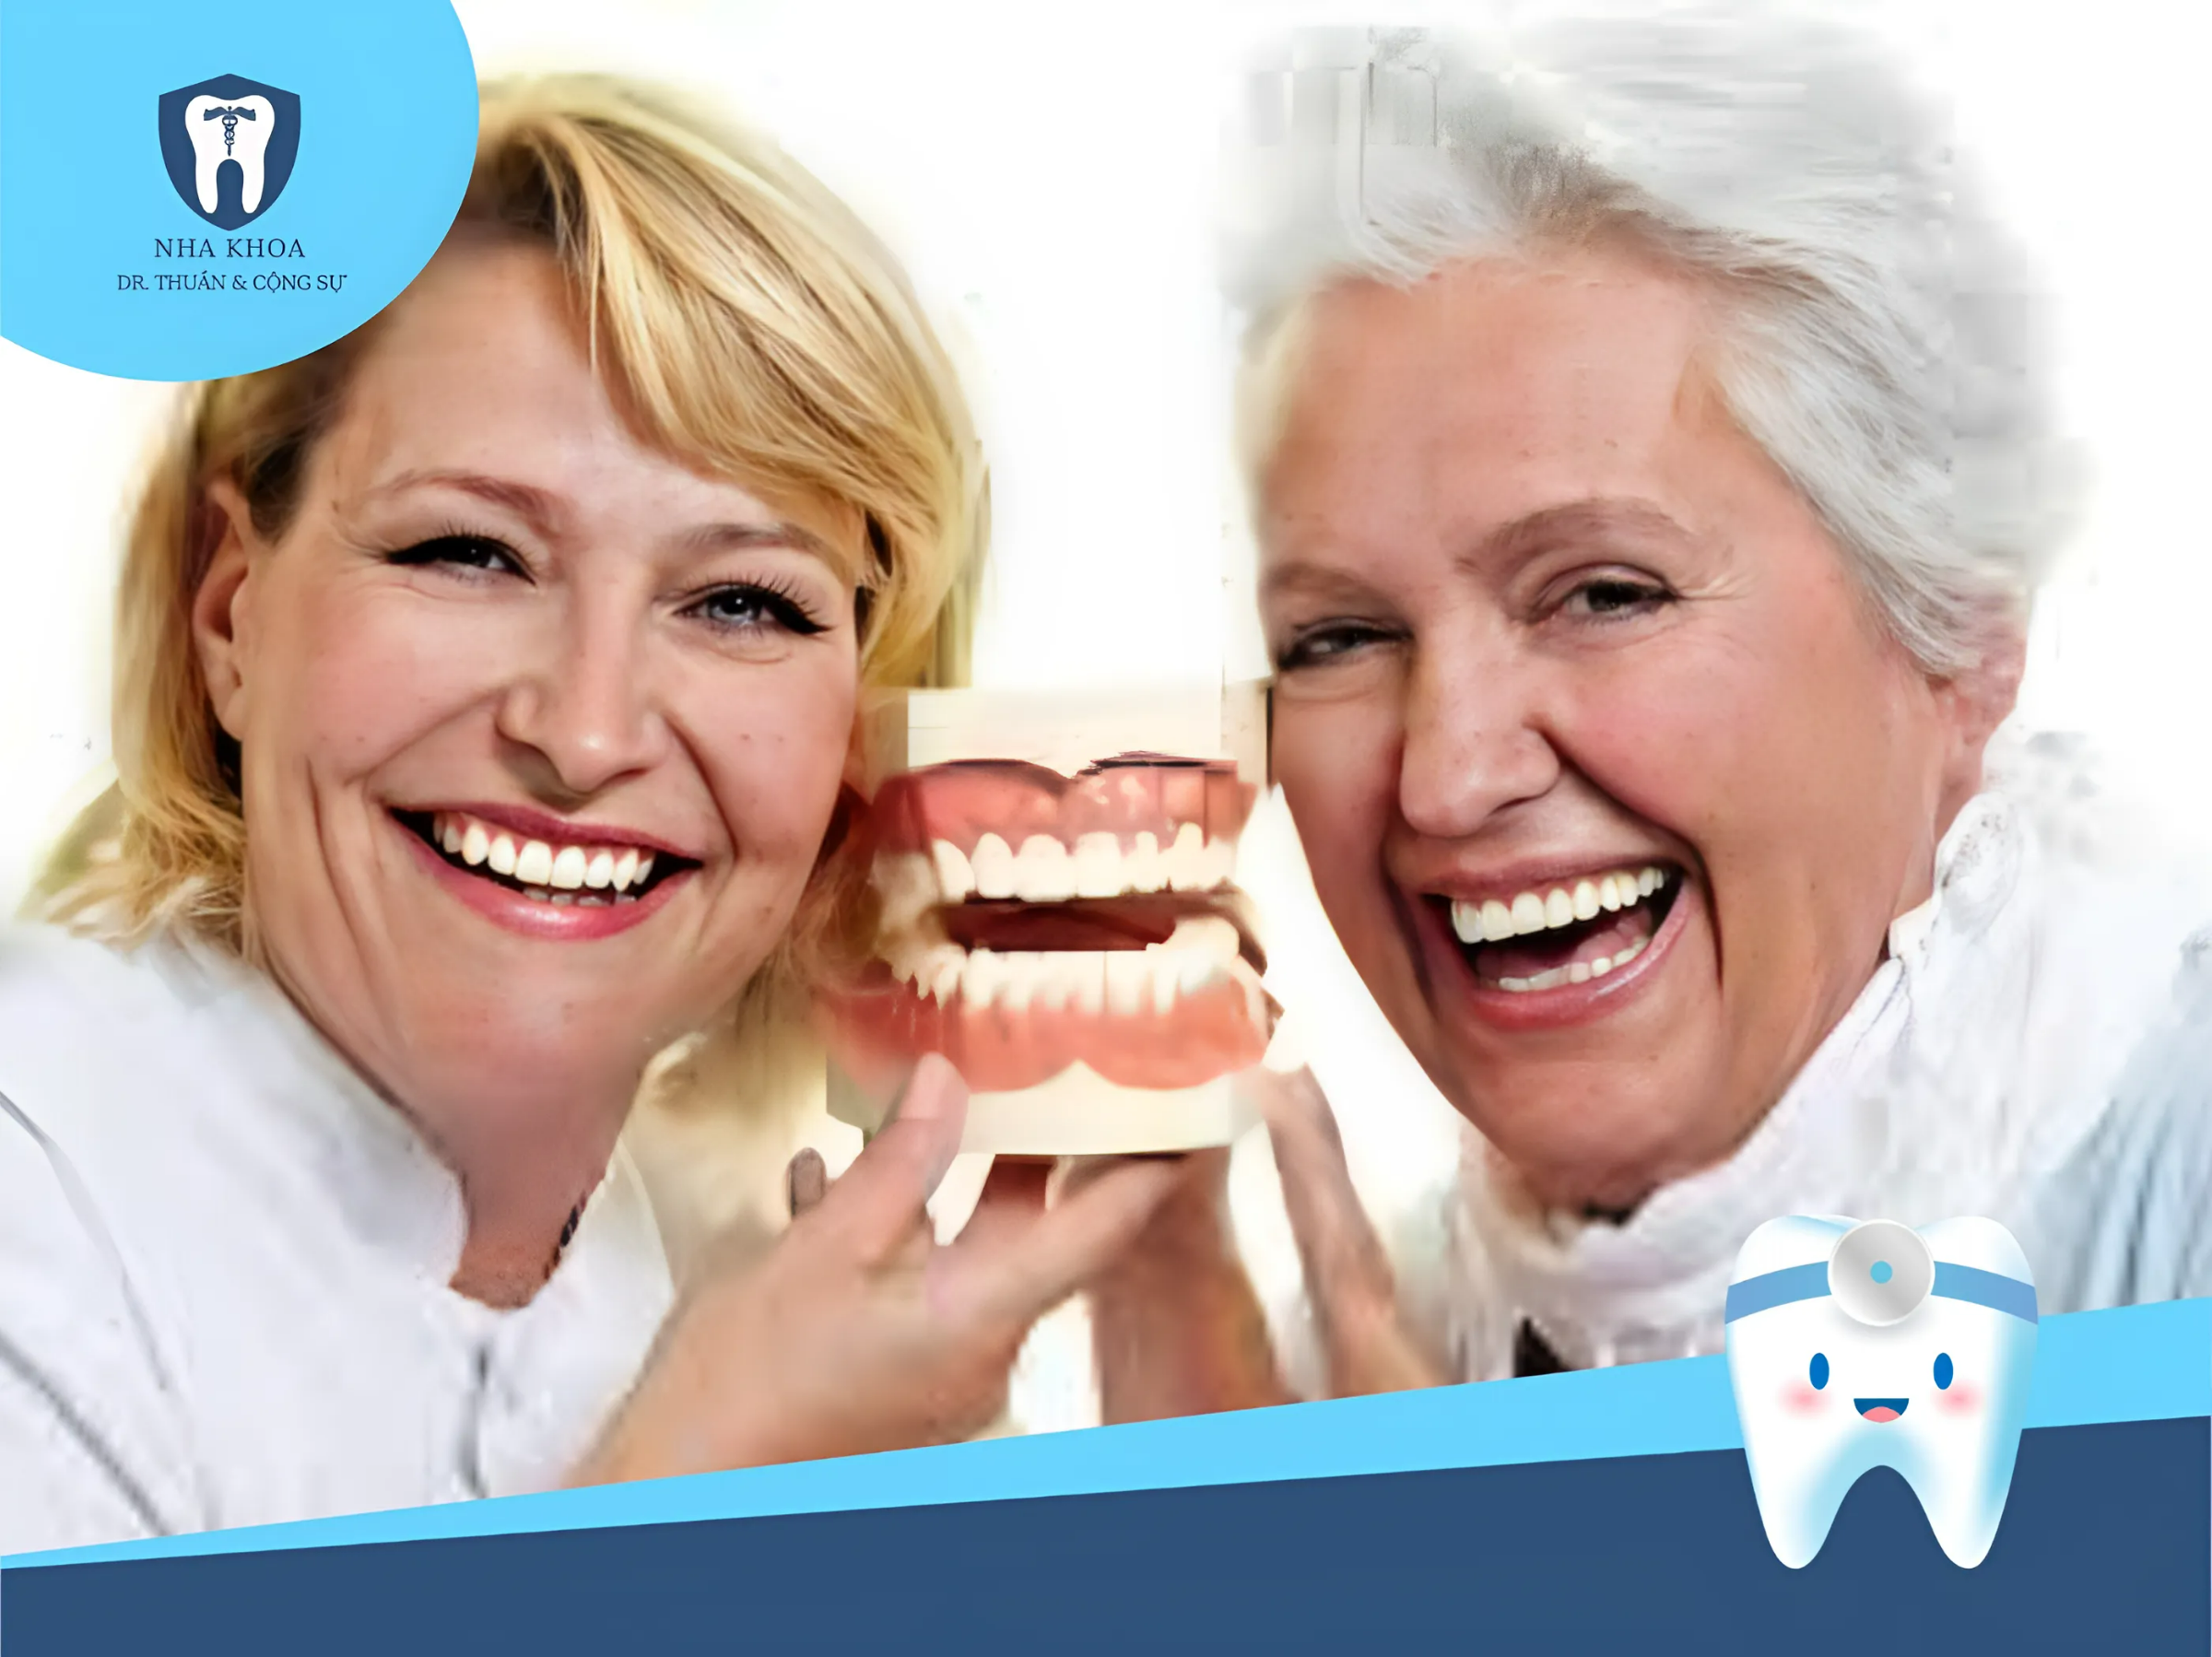 Răng giả được làm từ sứ hoặc nhựa dẻo, có màu sắc và hình dáng tương tự như răng thật. Răng giả được cố định vào khung hàm để thay thế cho những răng bị mất.